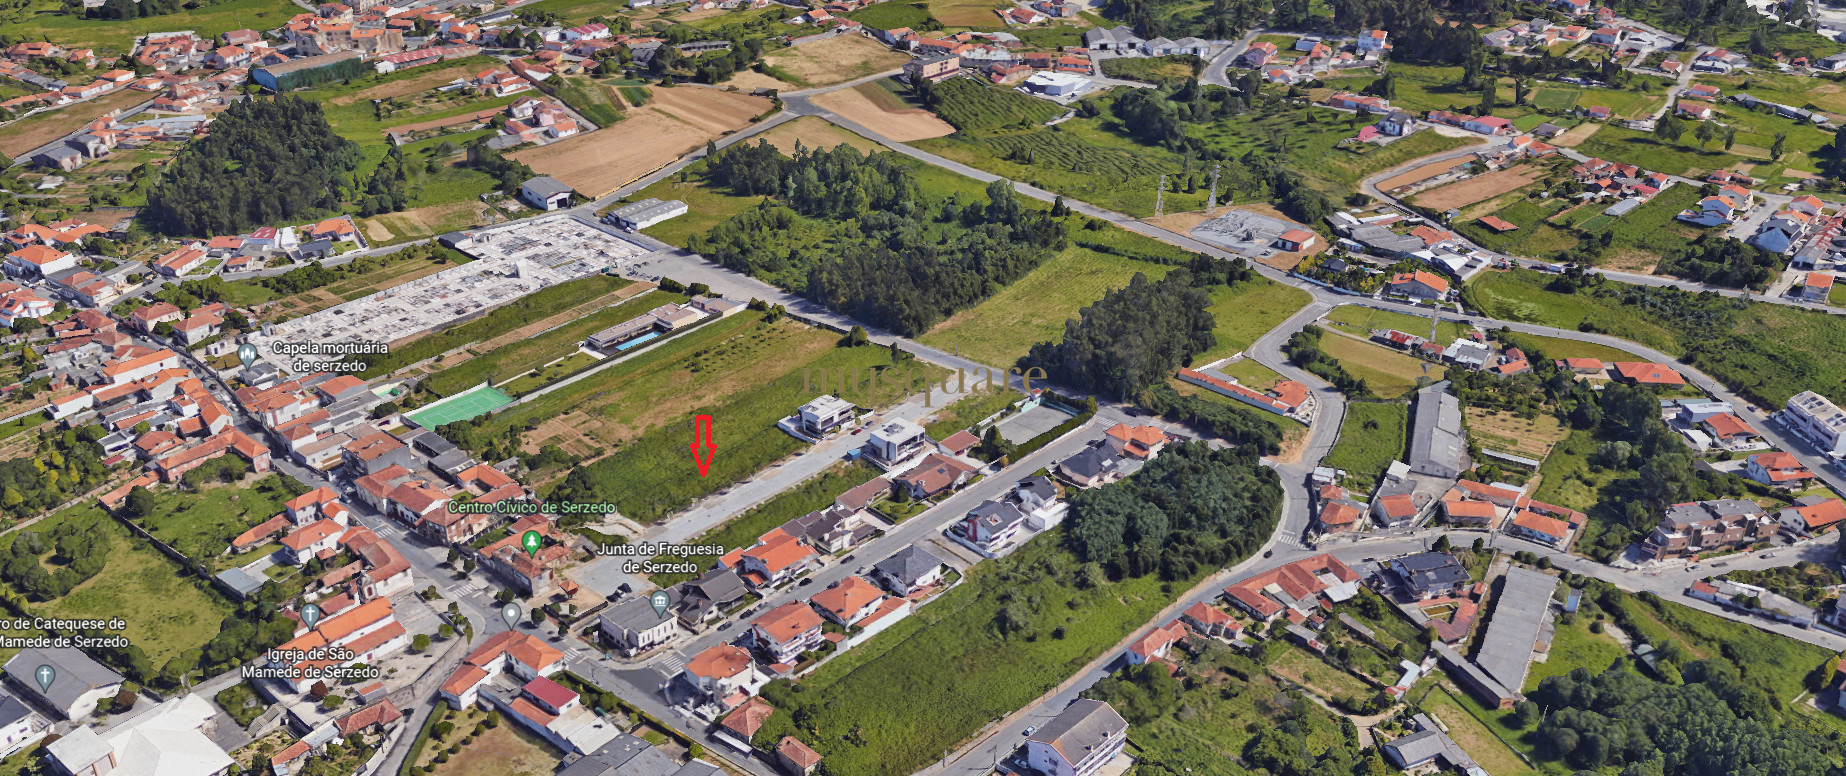 Lotes para construcción de vivienda, tipología t3, Serzedo, Vila Nova de Gaia